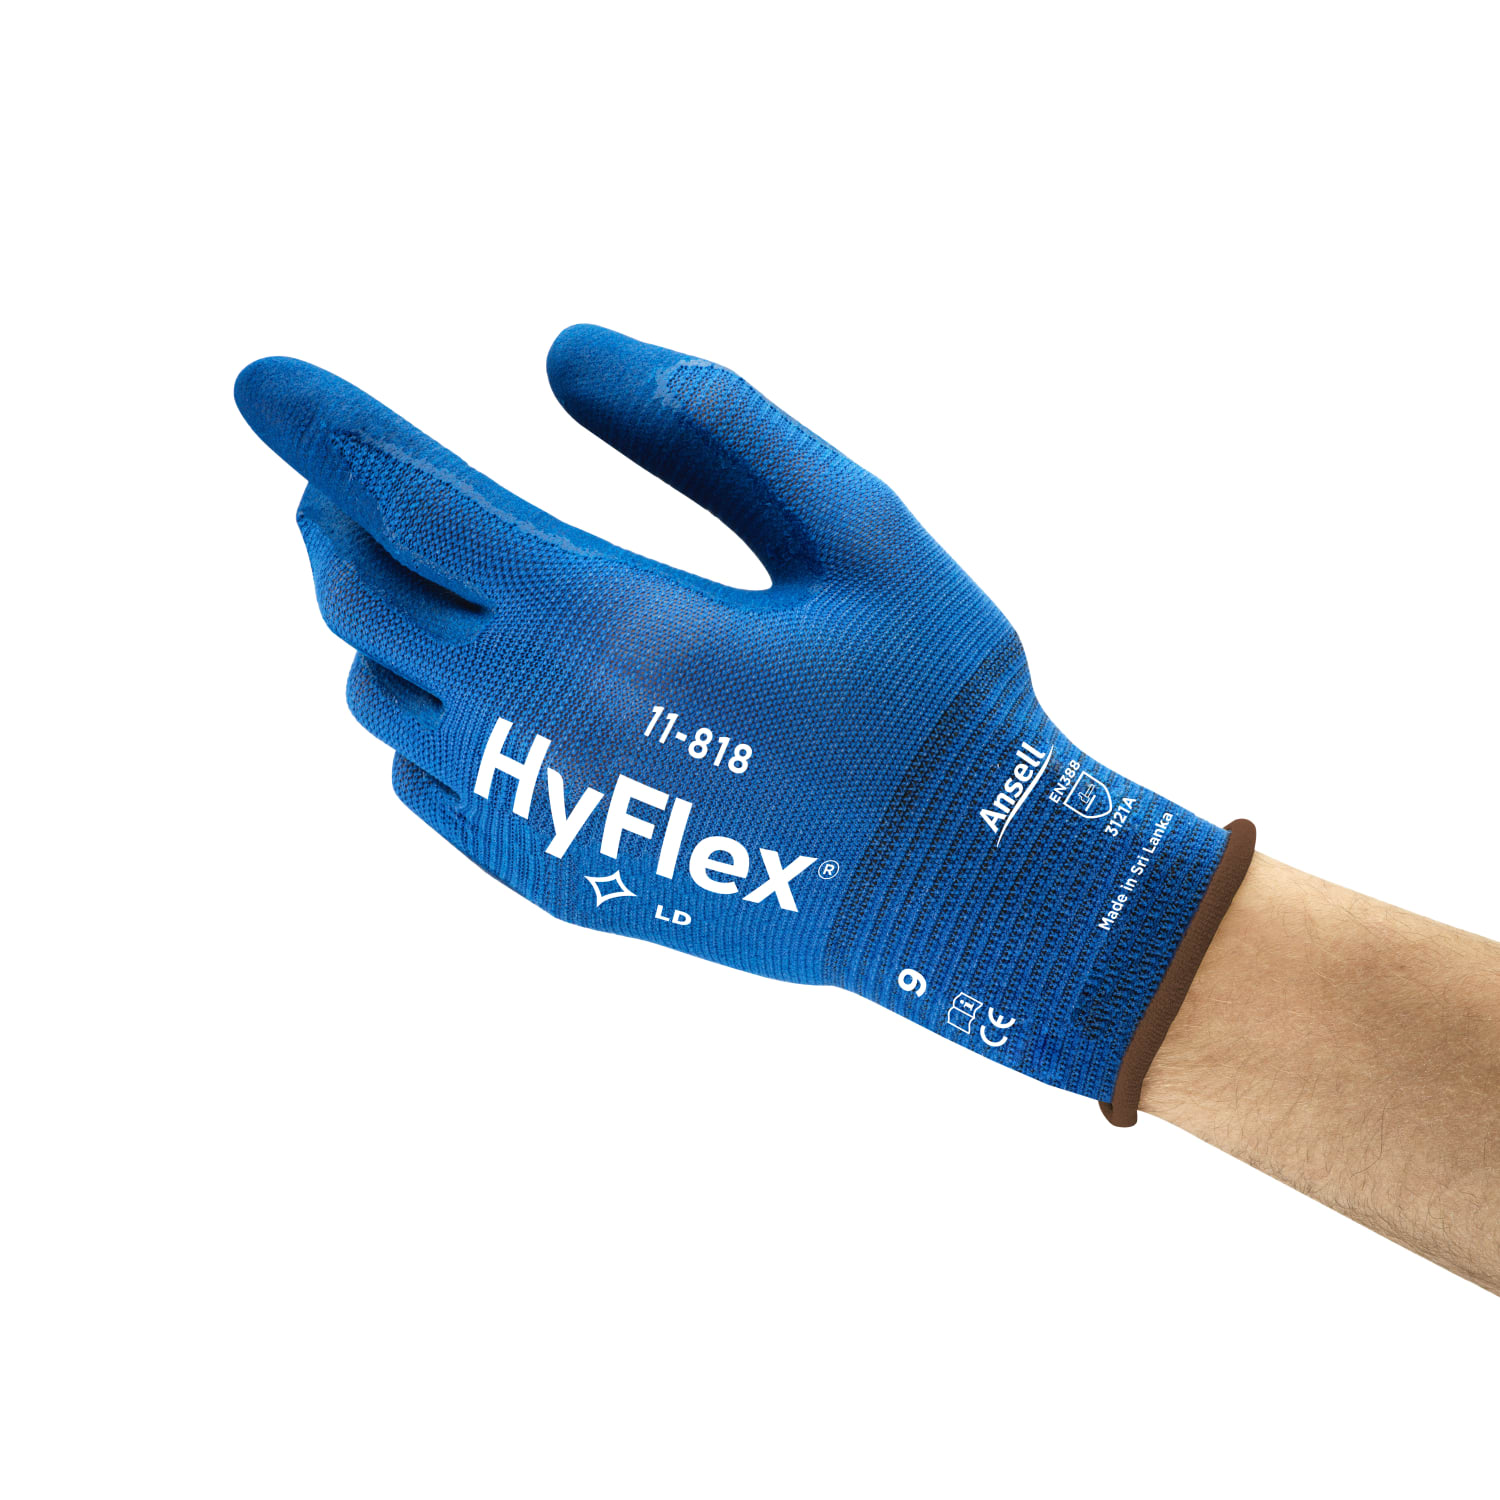 Gant de protection anti-coupure HyFlex 11-818 enduction mousse nitrile taille 8 photo du produit